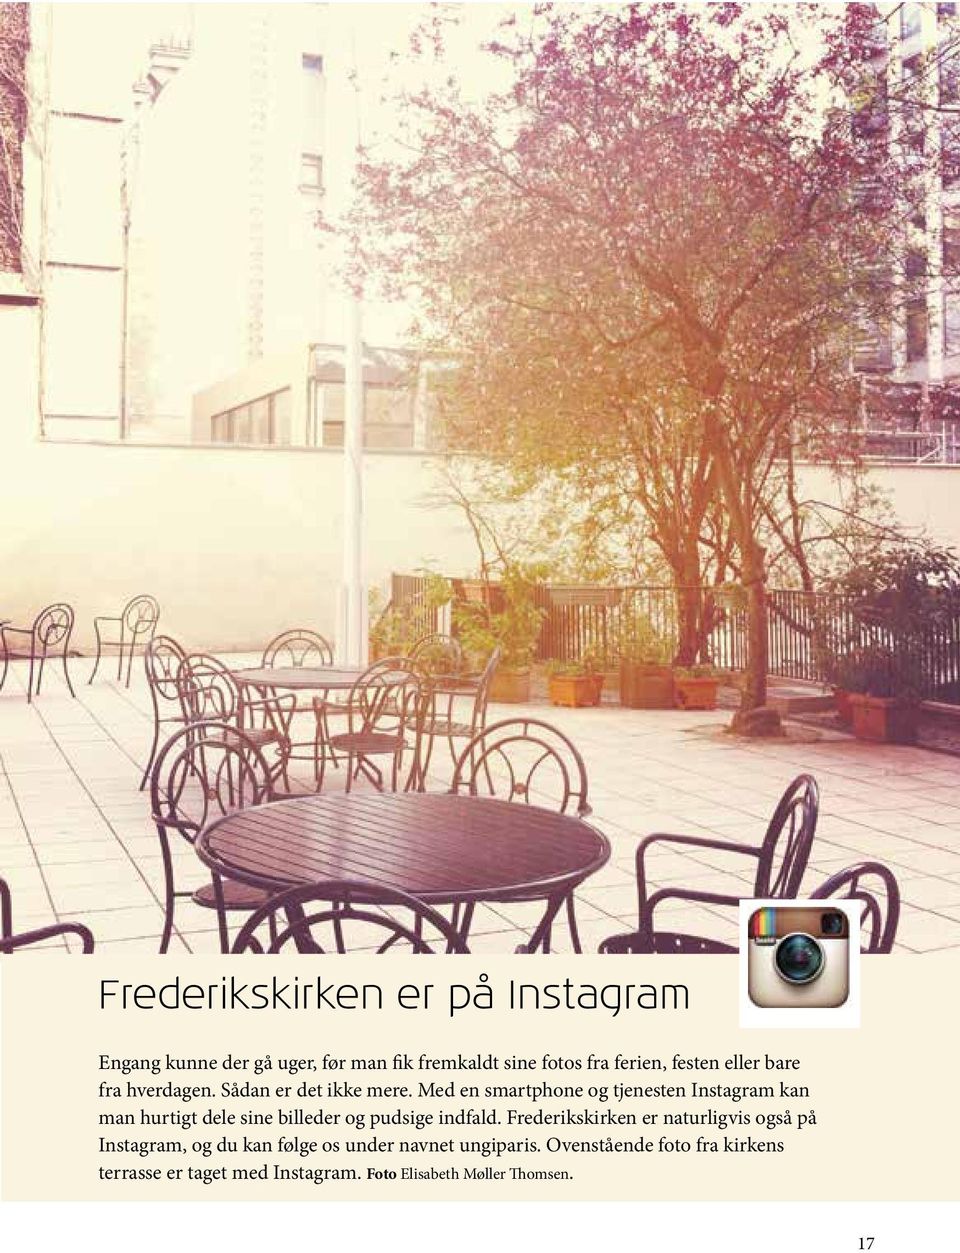 Med en smartphone og tjenesten Instagram kan man hurtigt dele sine billeder og pudsige indfald.